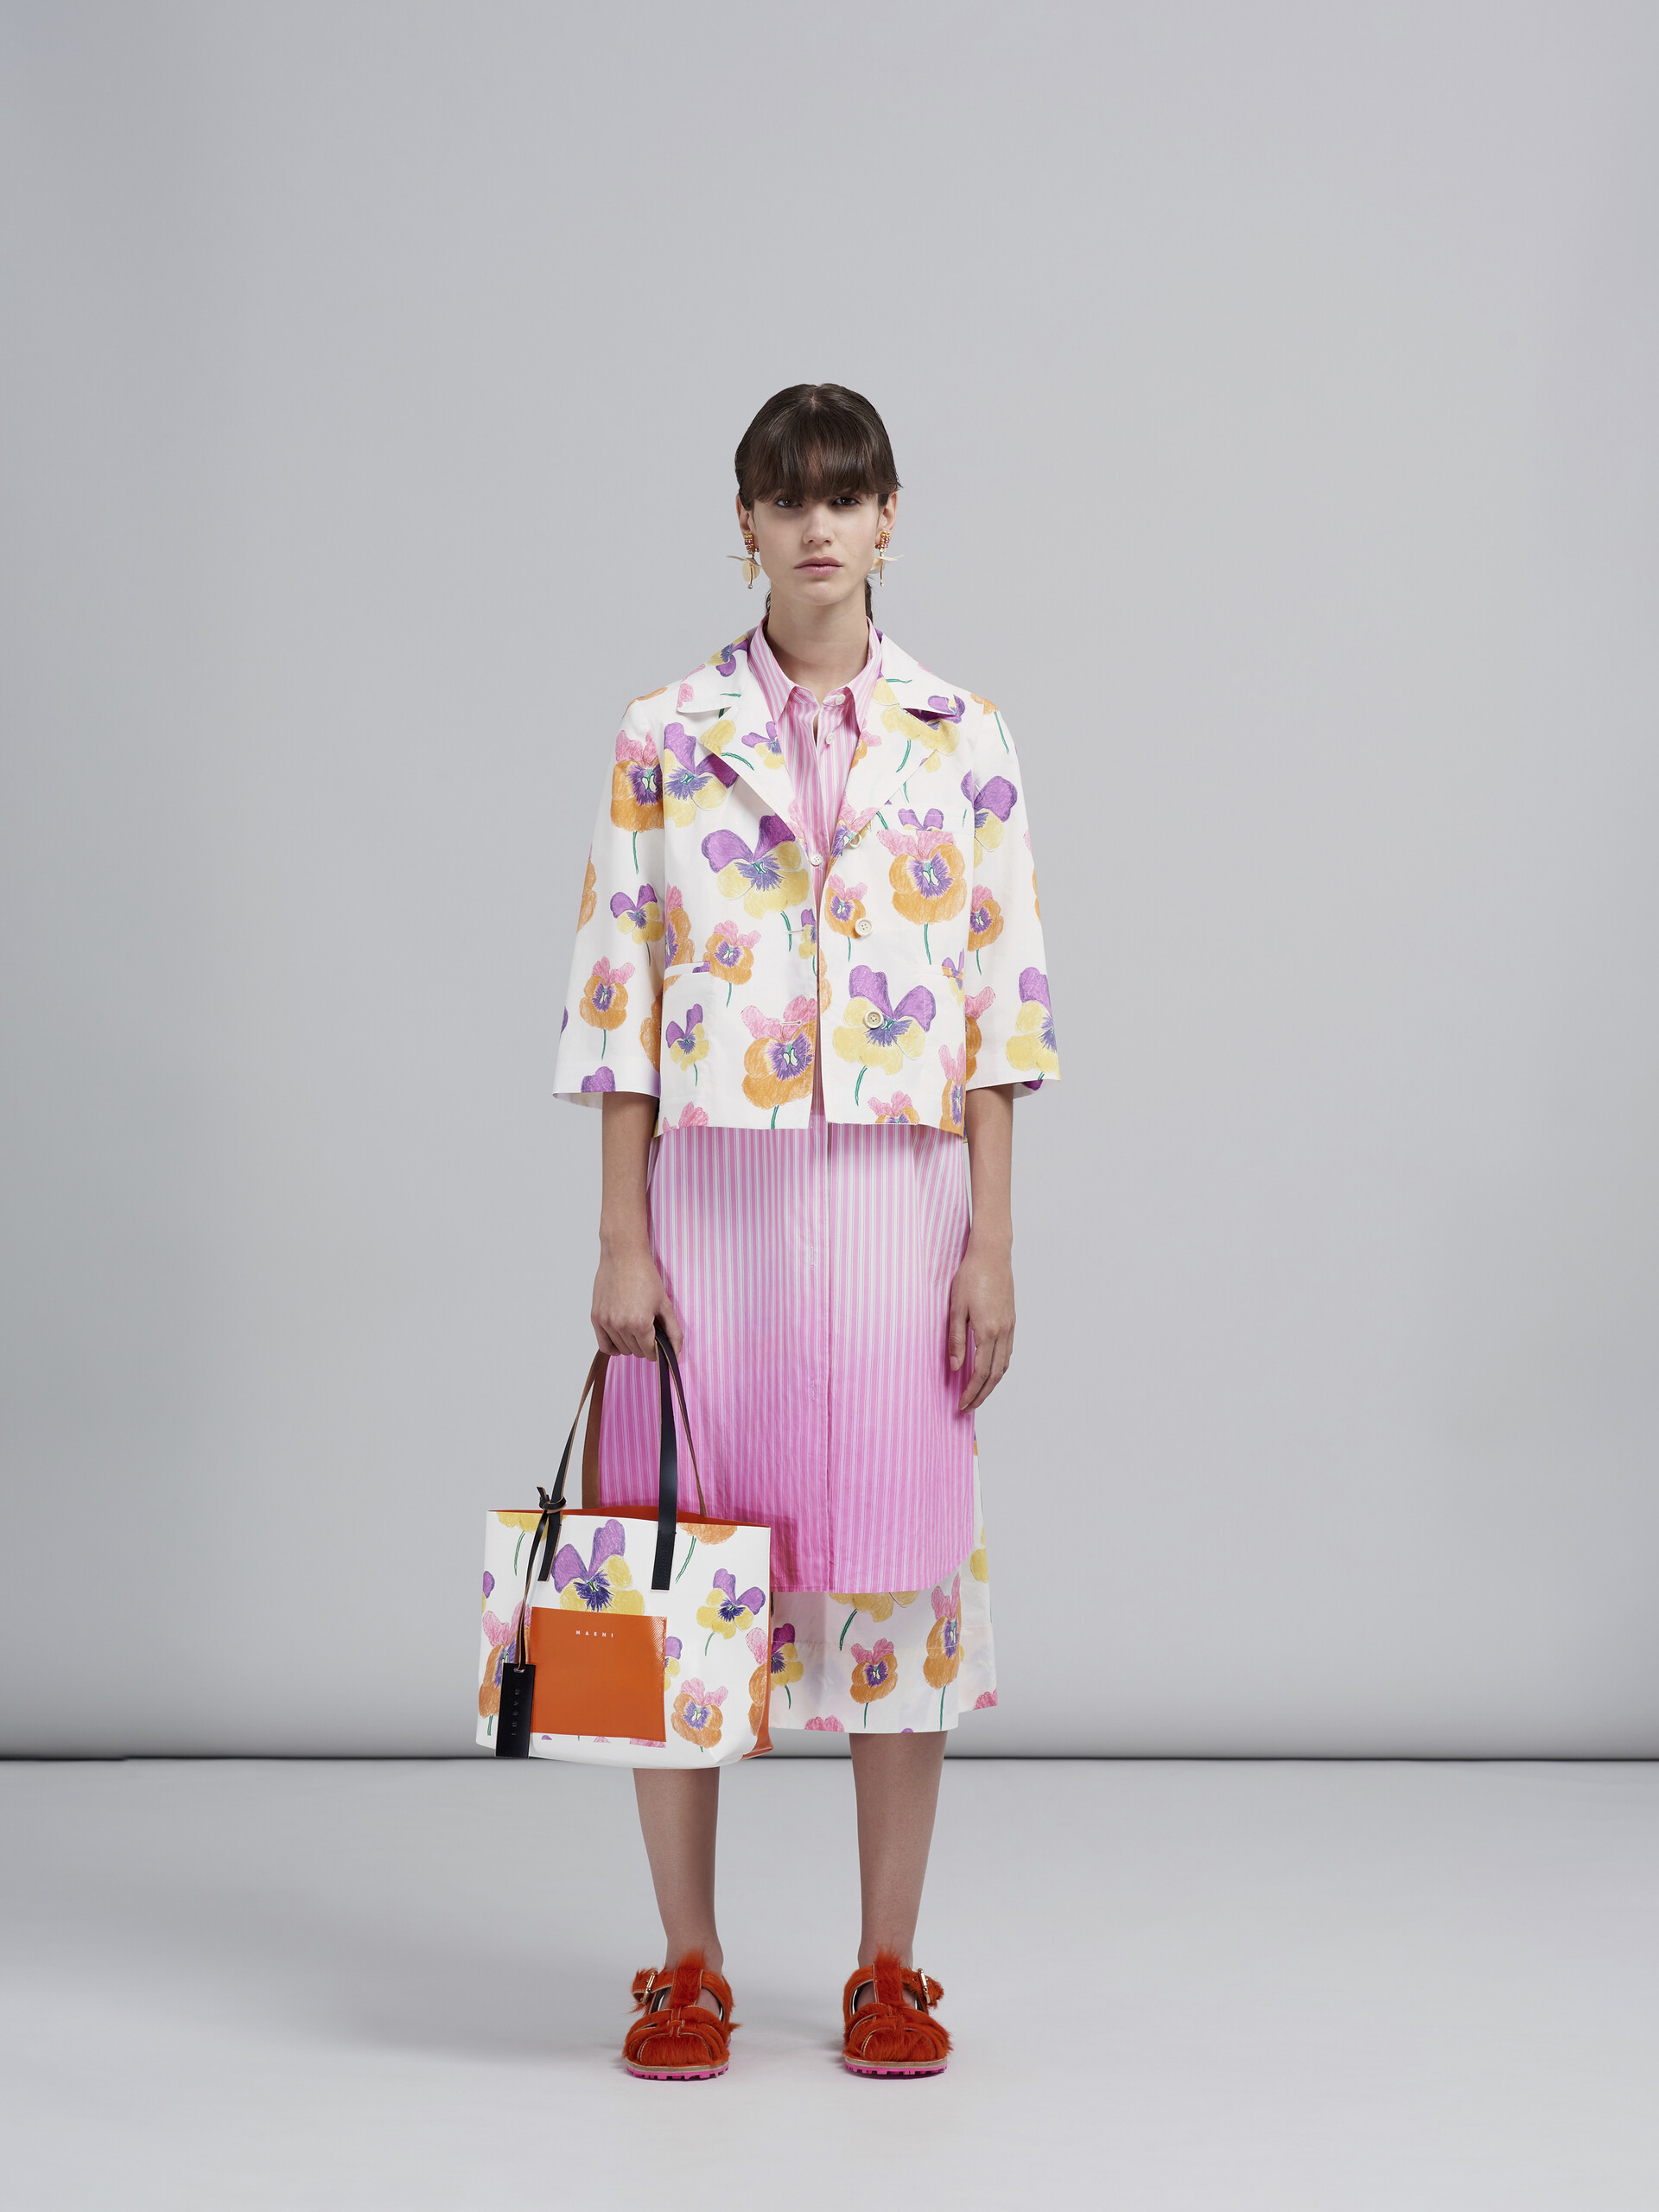 Pansies print orange shopping bag - Shopping Bags - Image 2